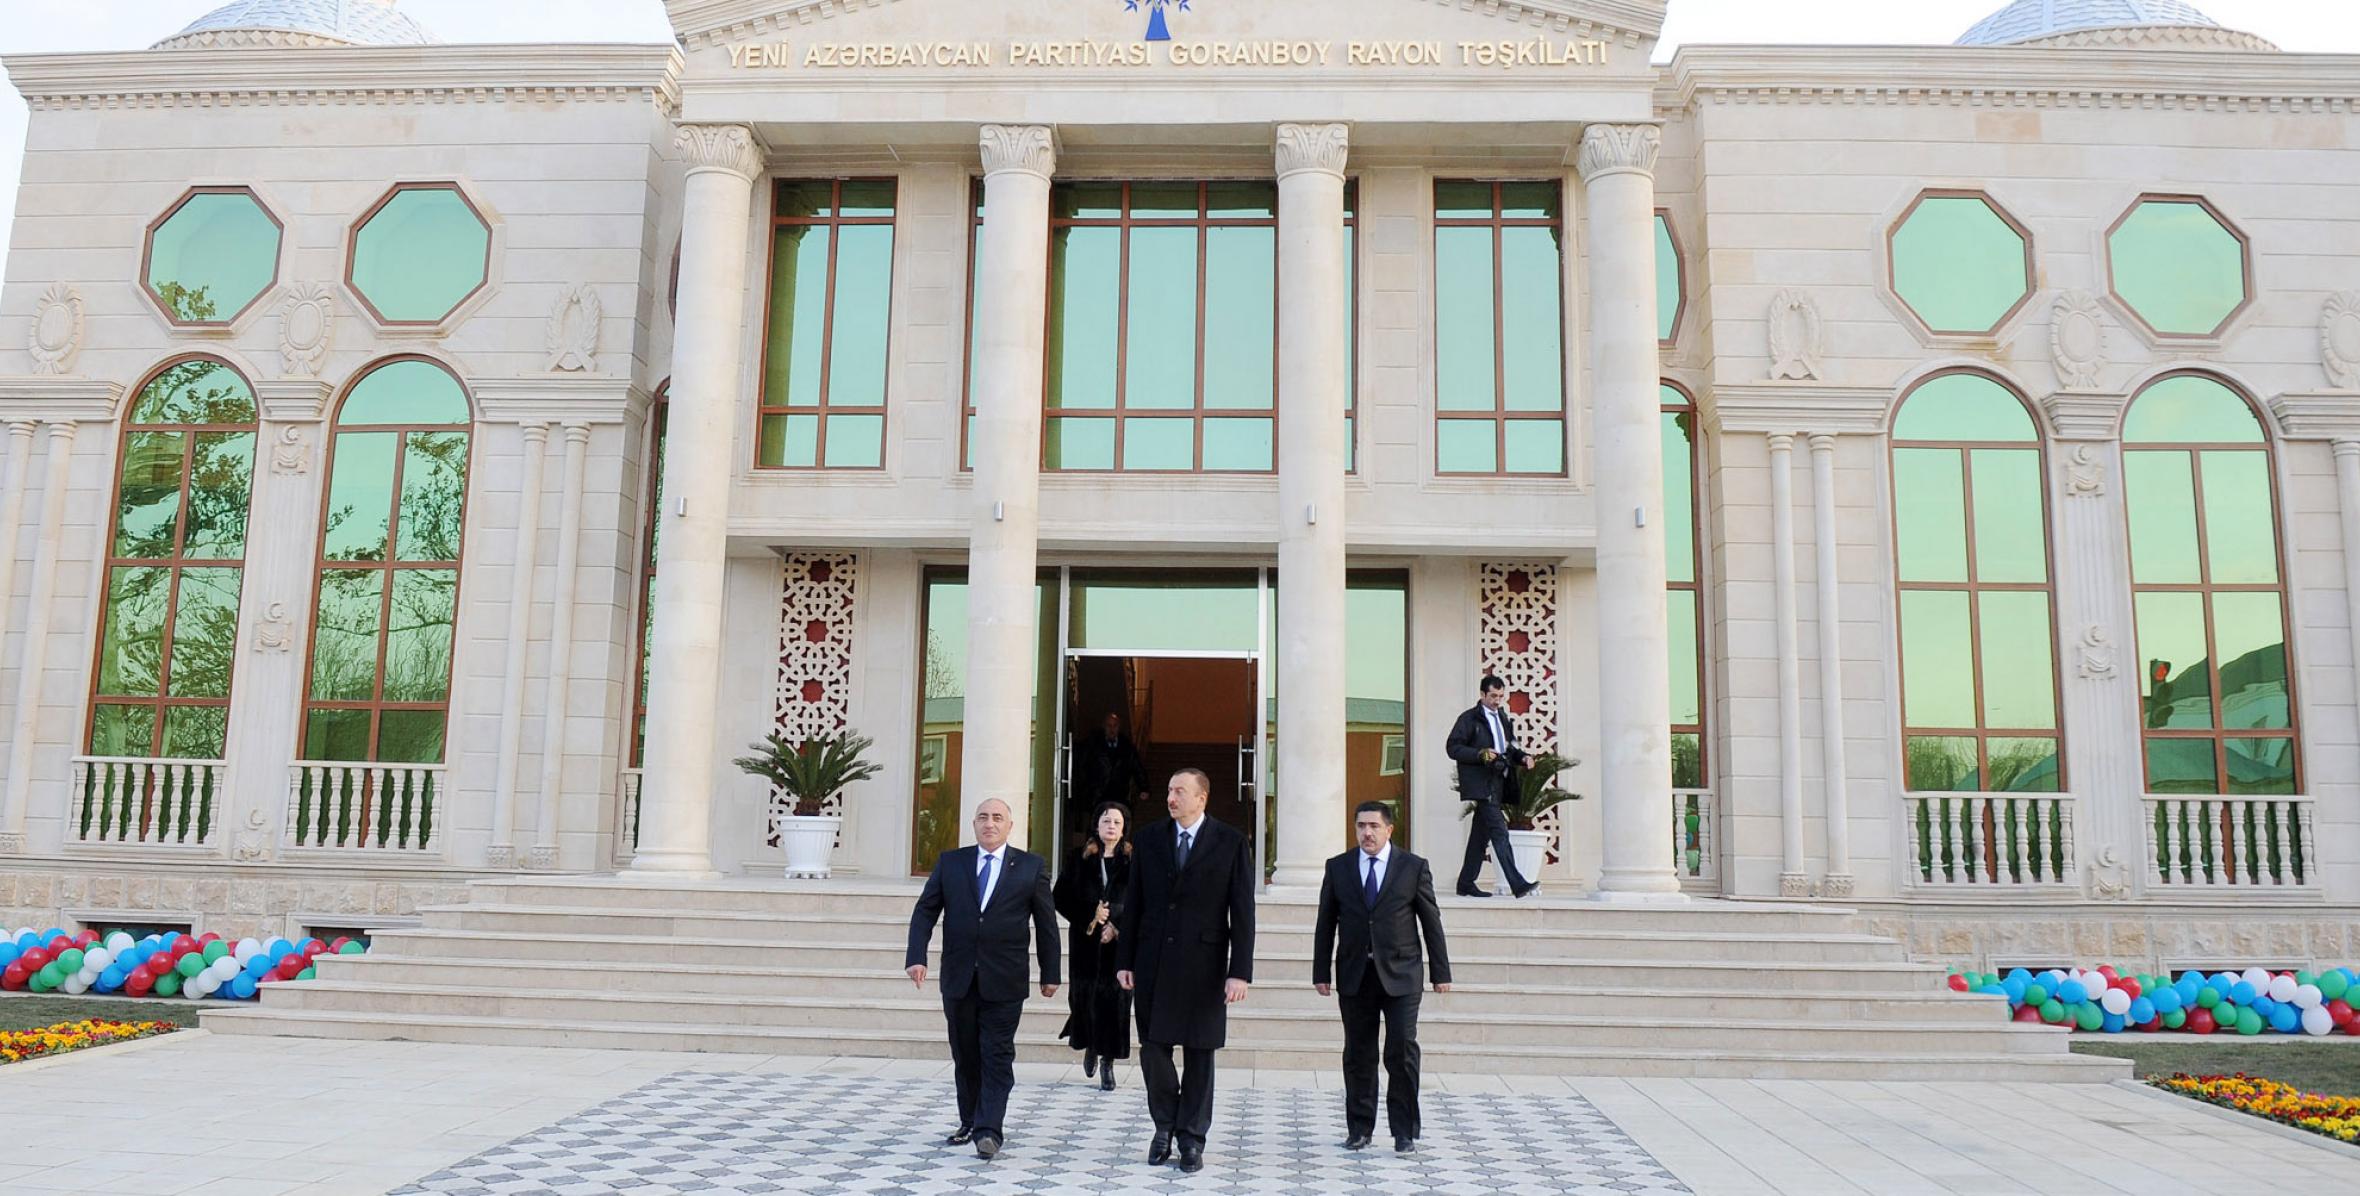 İlham Əliyev Yeni Azərbaycan Partiyası Goranboy rayon təşkilatının yeni inzibati binasının açılışında iştirak etmişdir